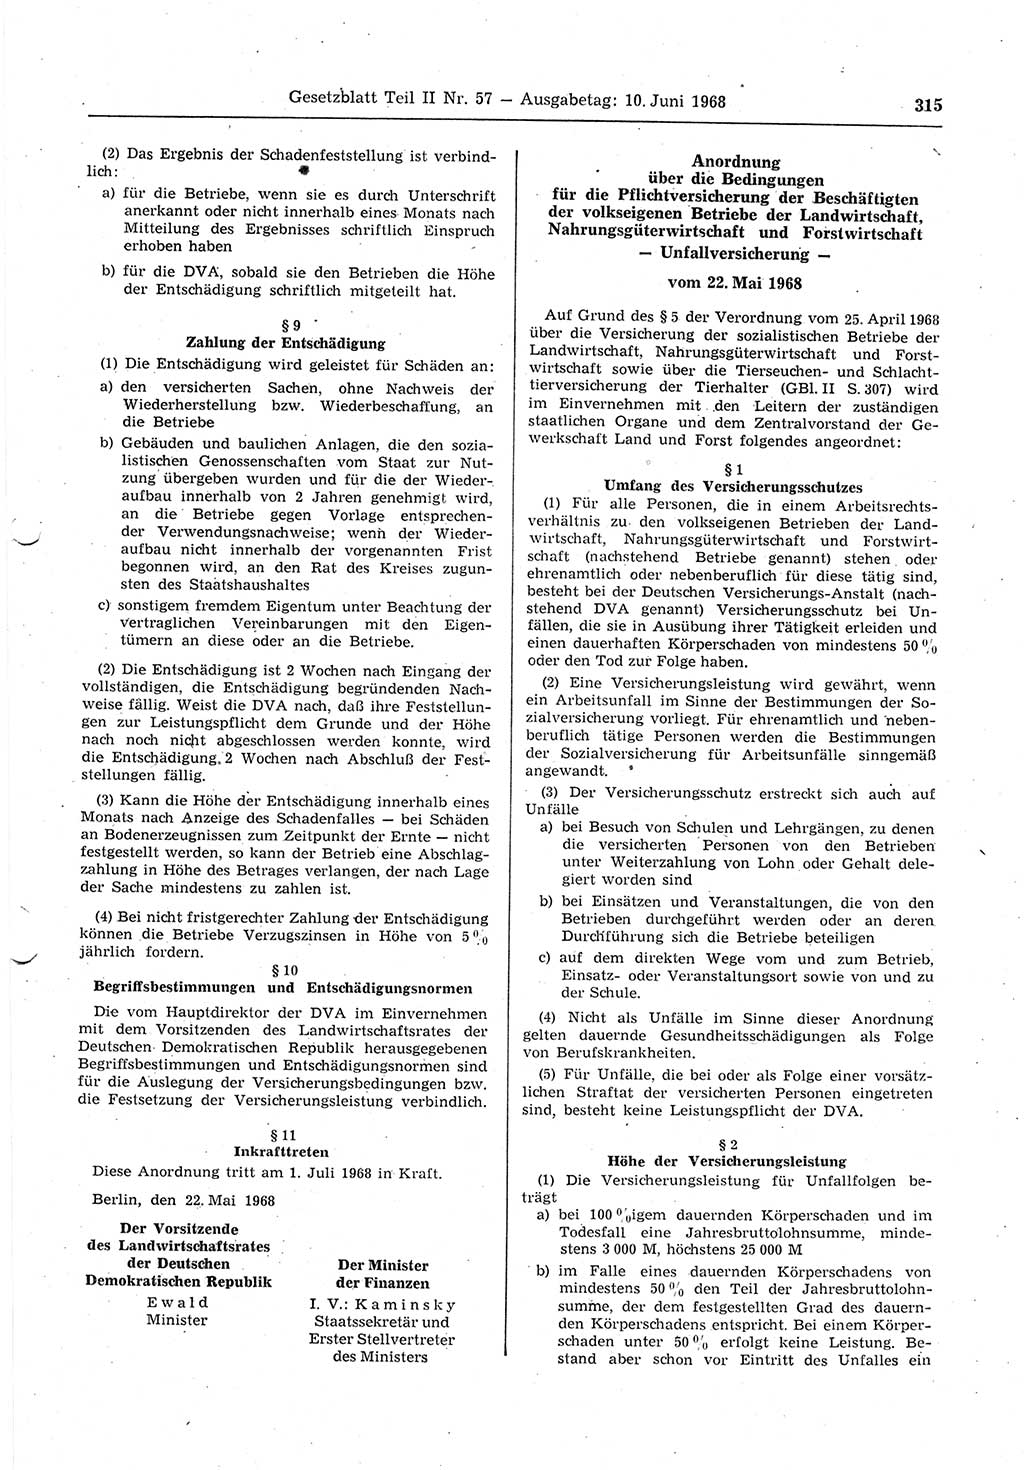 Gesetzblatt (GBl.) der Deutschen Demokratischen Republik (DDR) Teil ⅠⅠ 1968, Seite 315 (GBl. DDR ⅠⅠ 1968, S. 315)